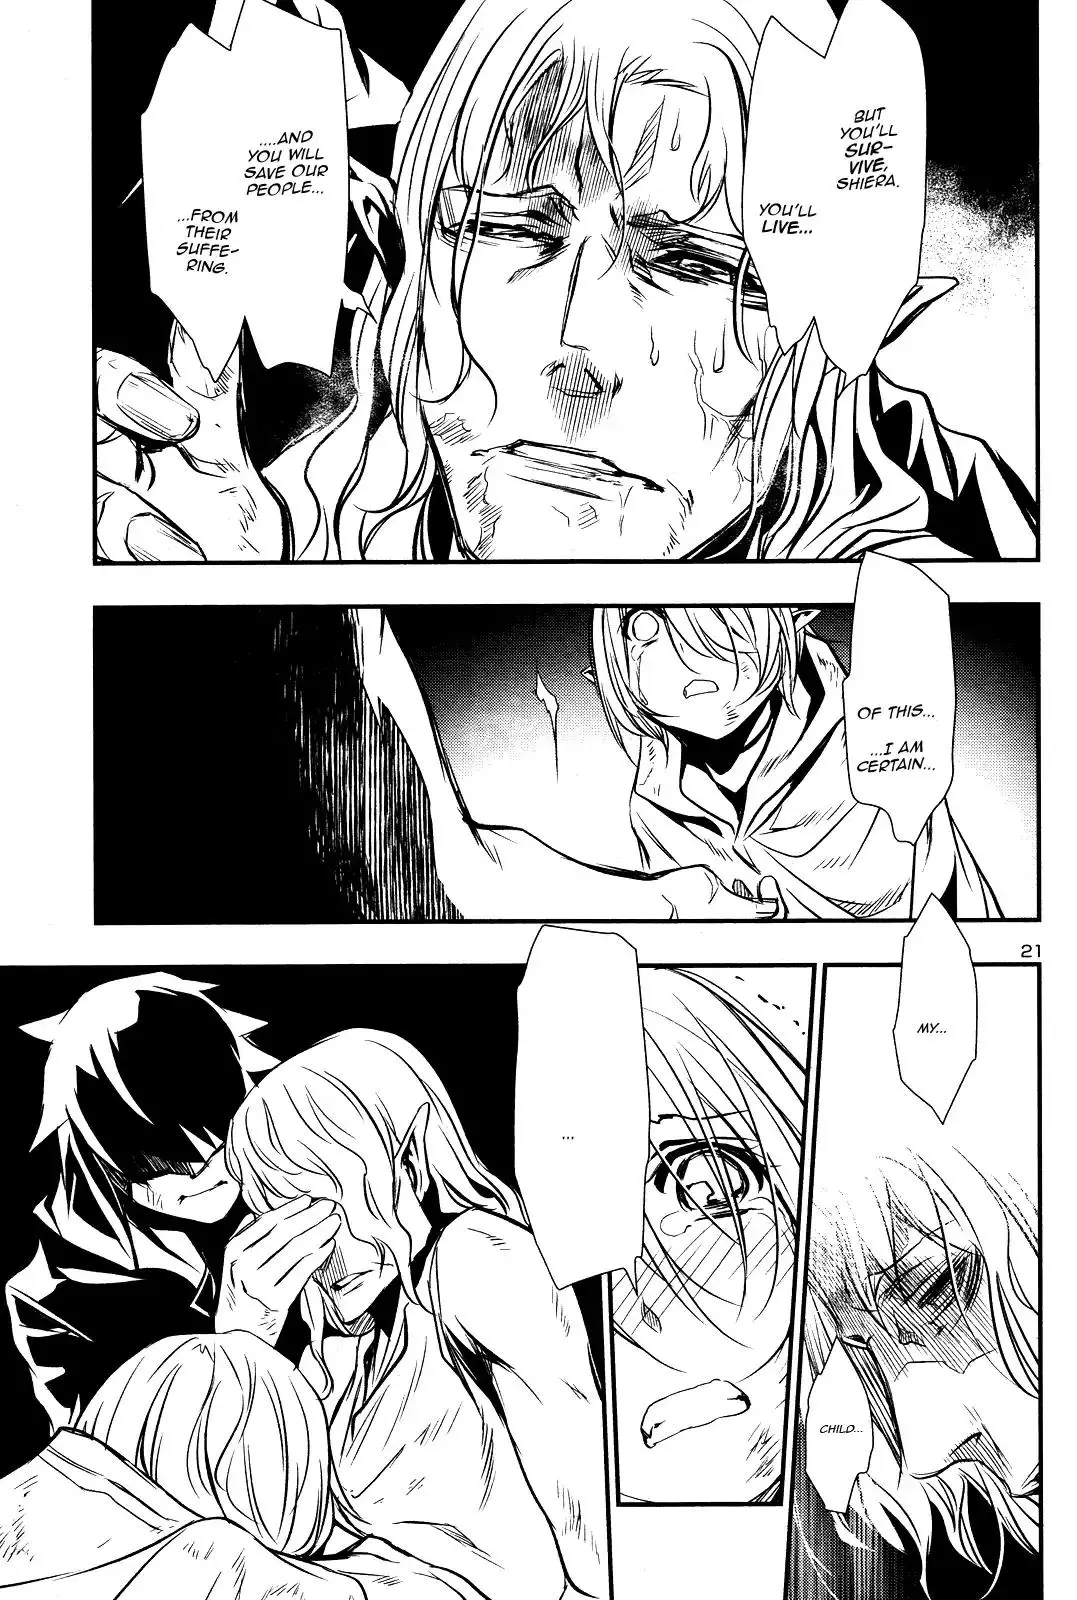 Shinju no Nectar - 16 page 19